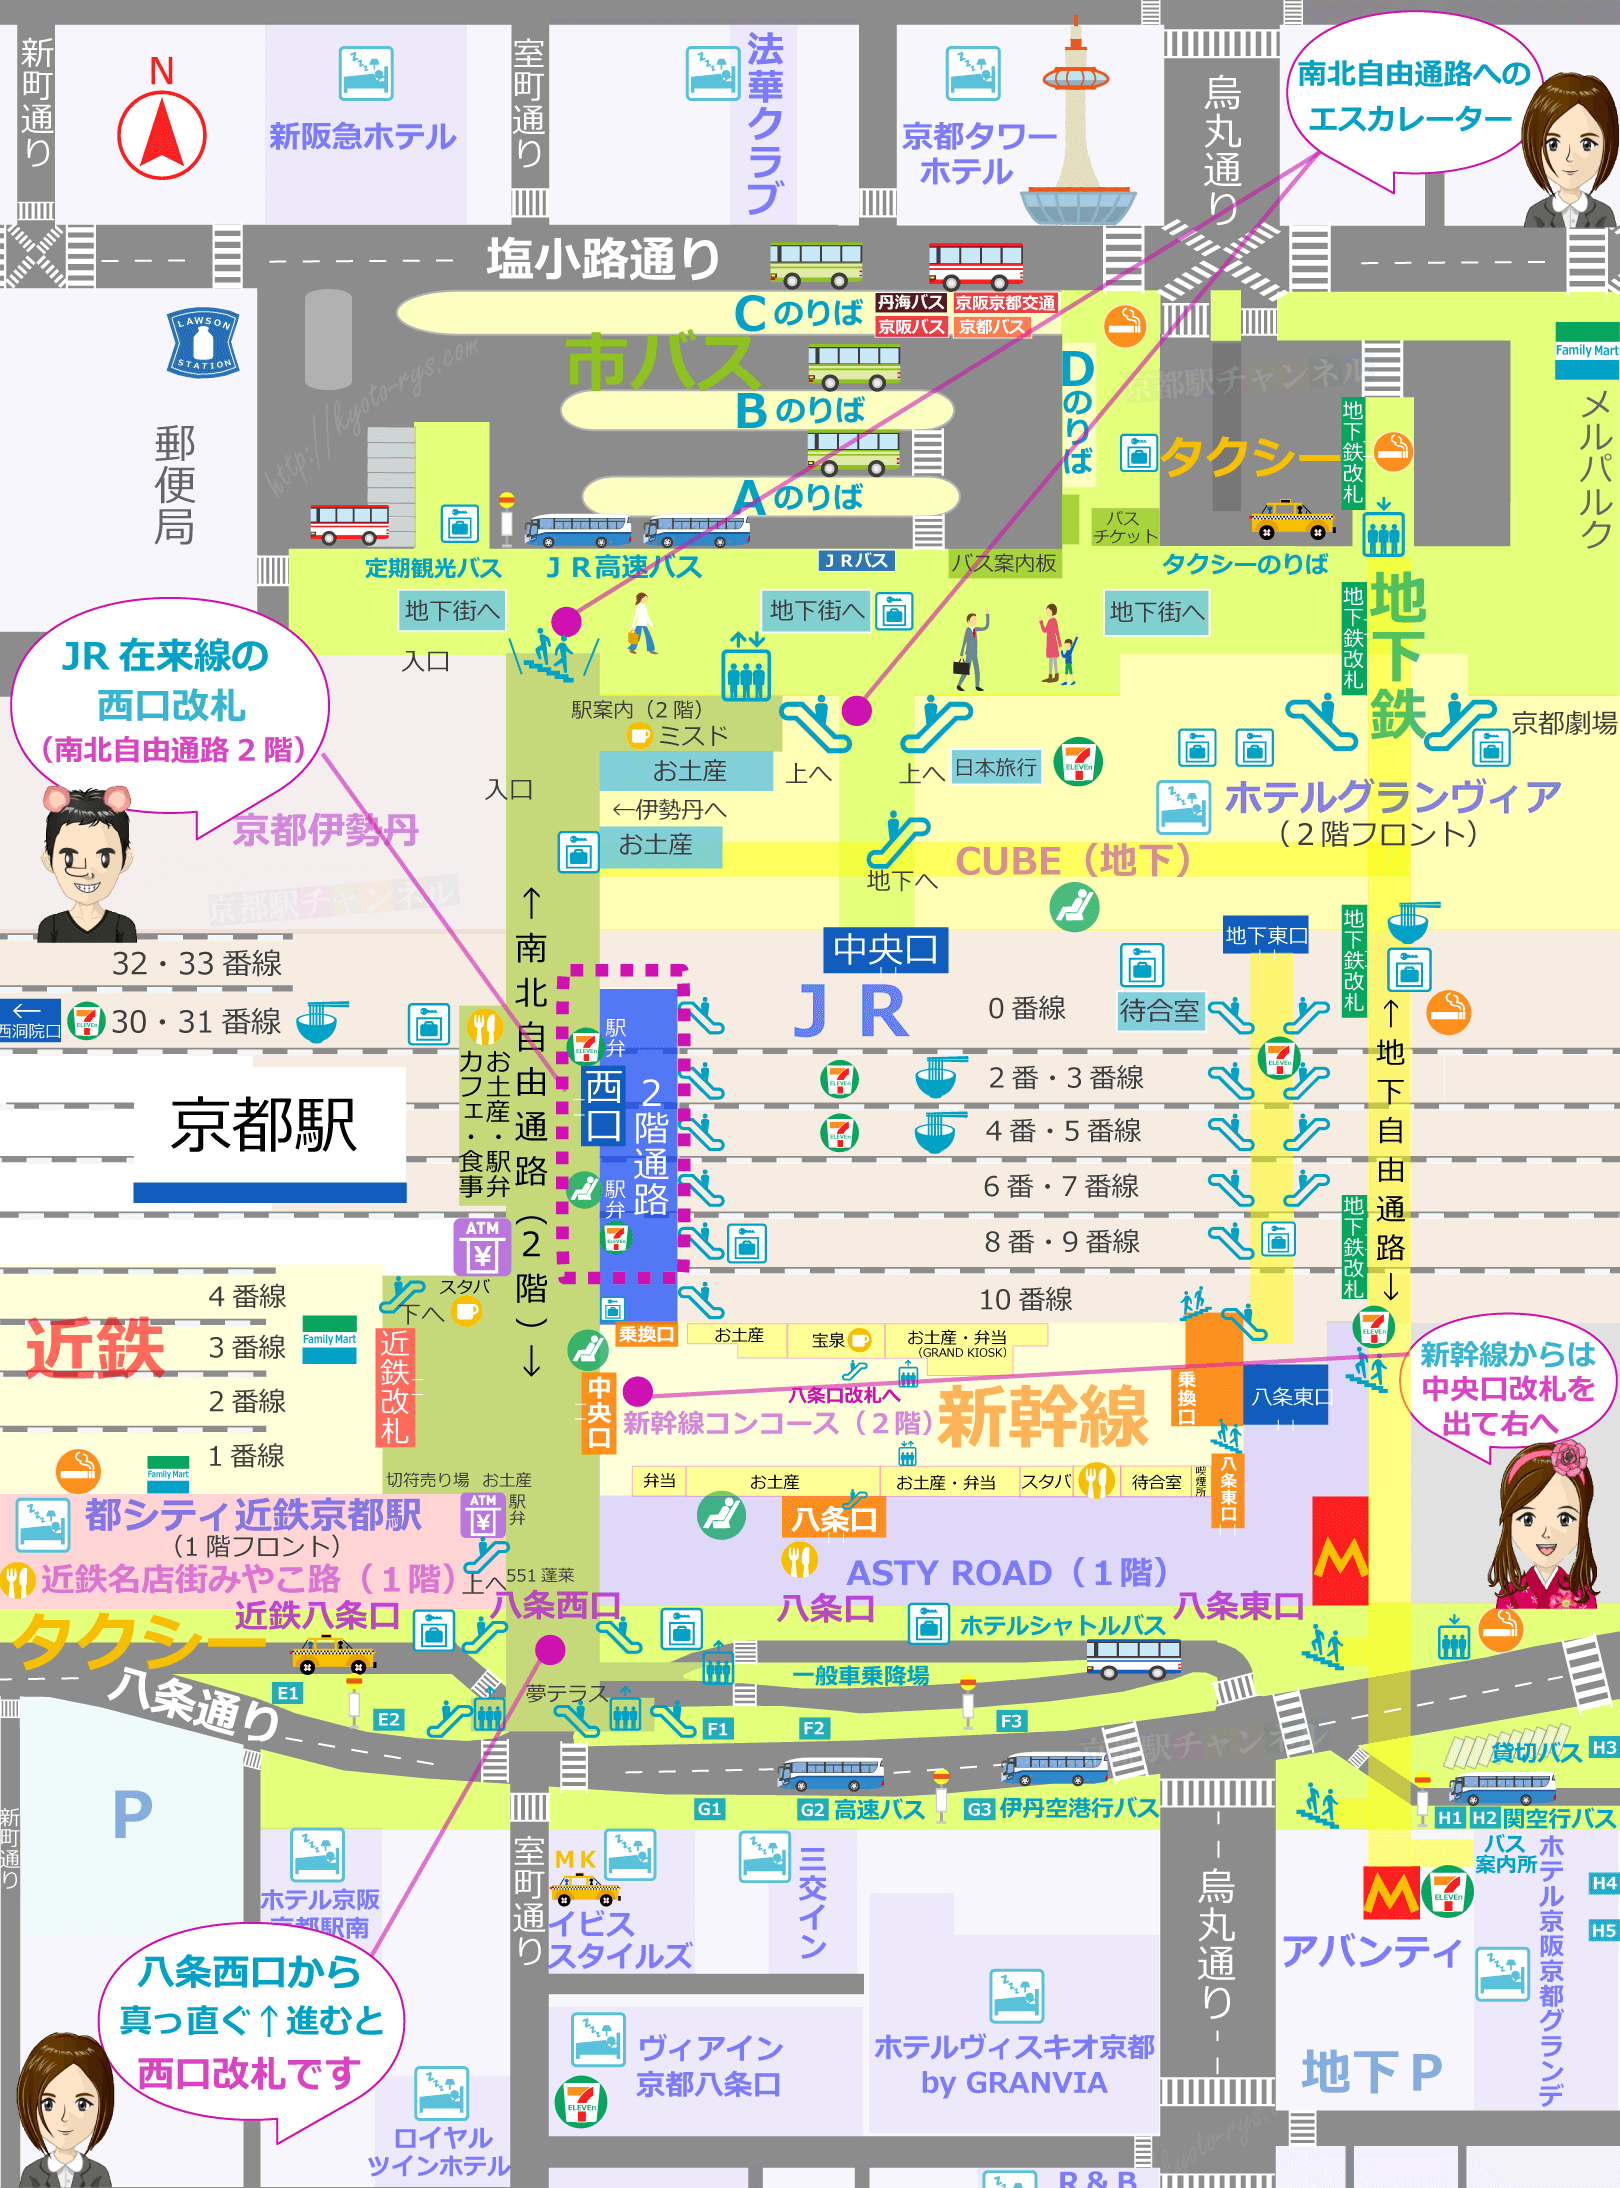 京都駅の構内図と周辺マップ